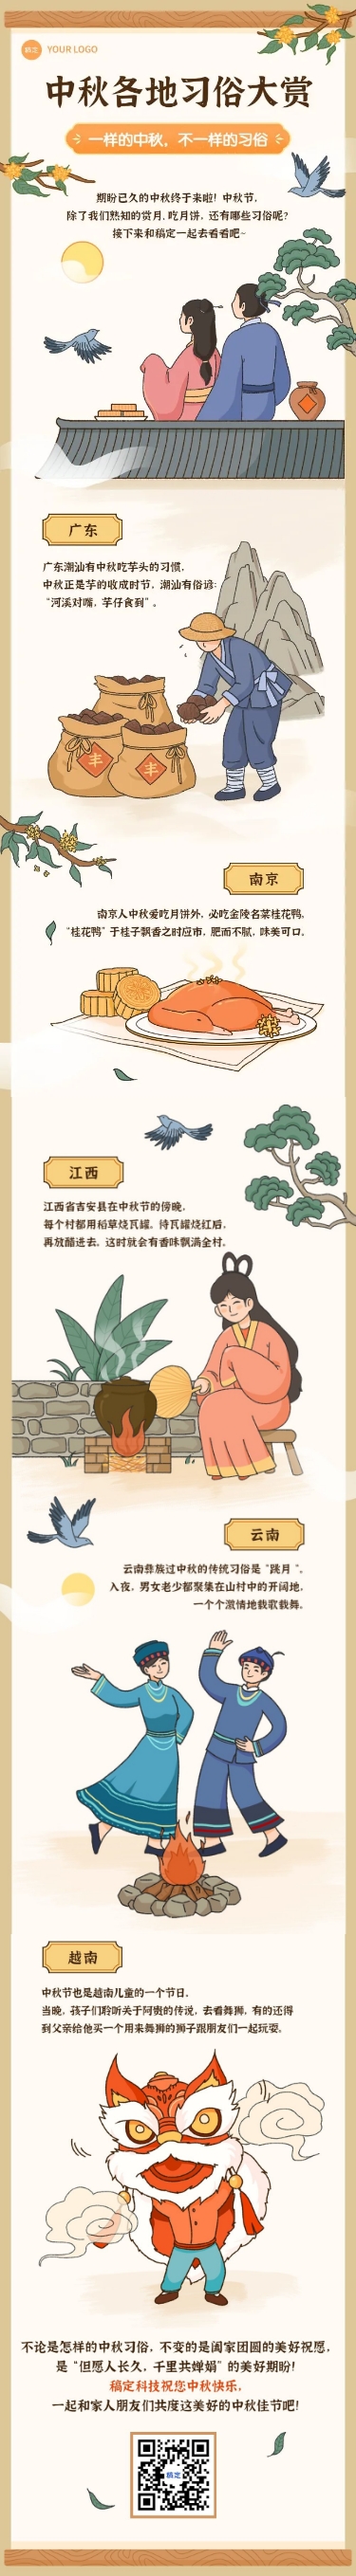 中秋节节日祝福手绘插画条漫长图